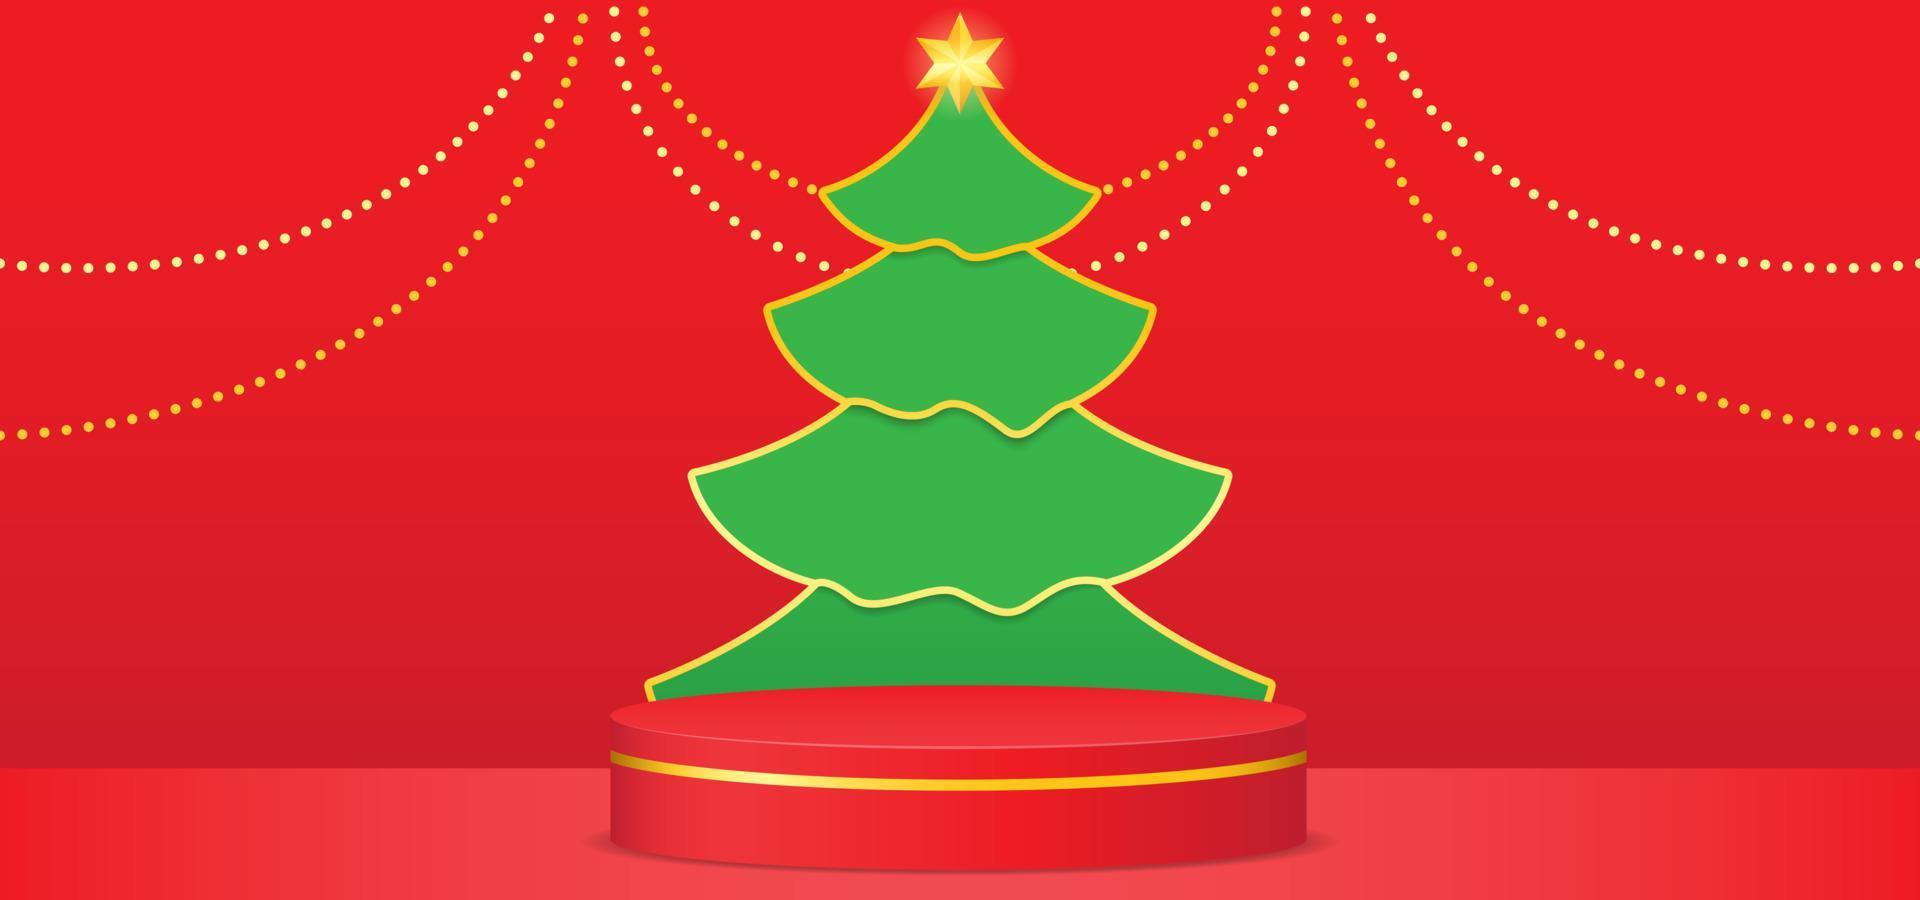 Weihnachtsbaum mit rotem Podium und goldenen Kugeldekorationen. Vektorhintergrund mit Papierschnitt-Stil vektor